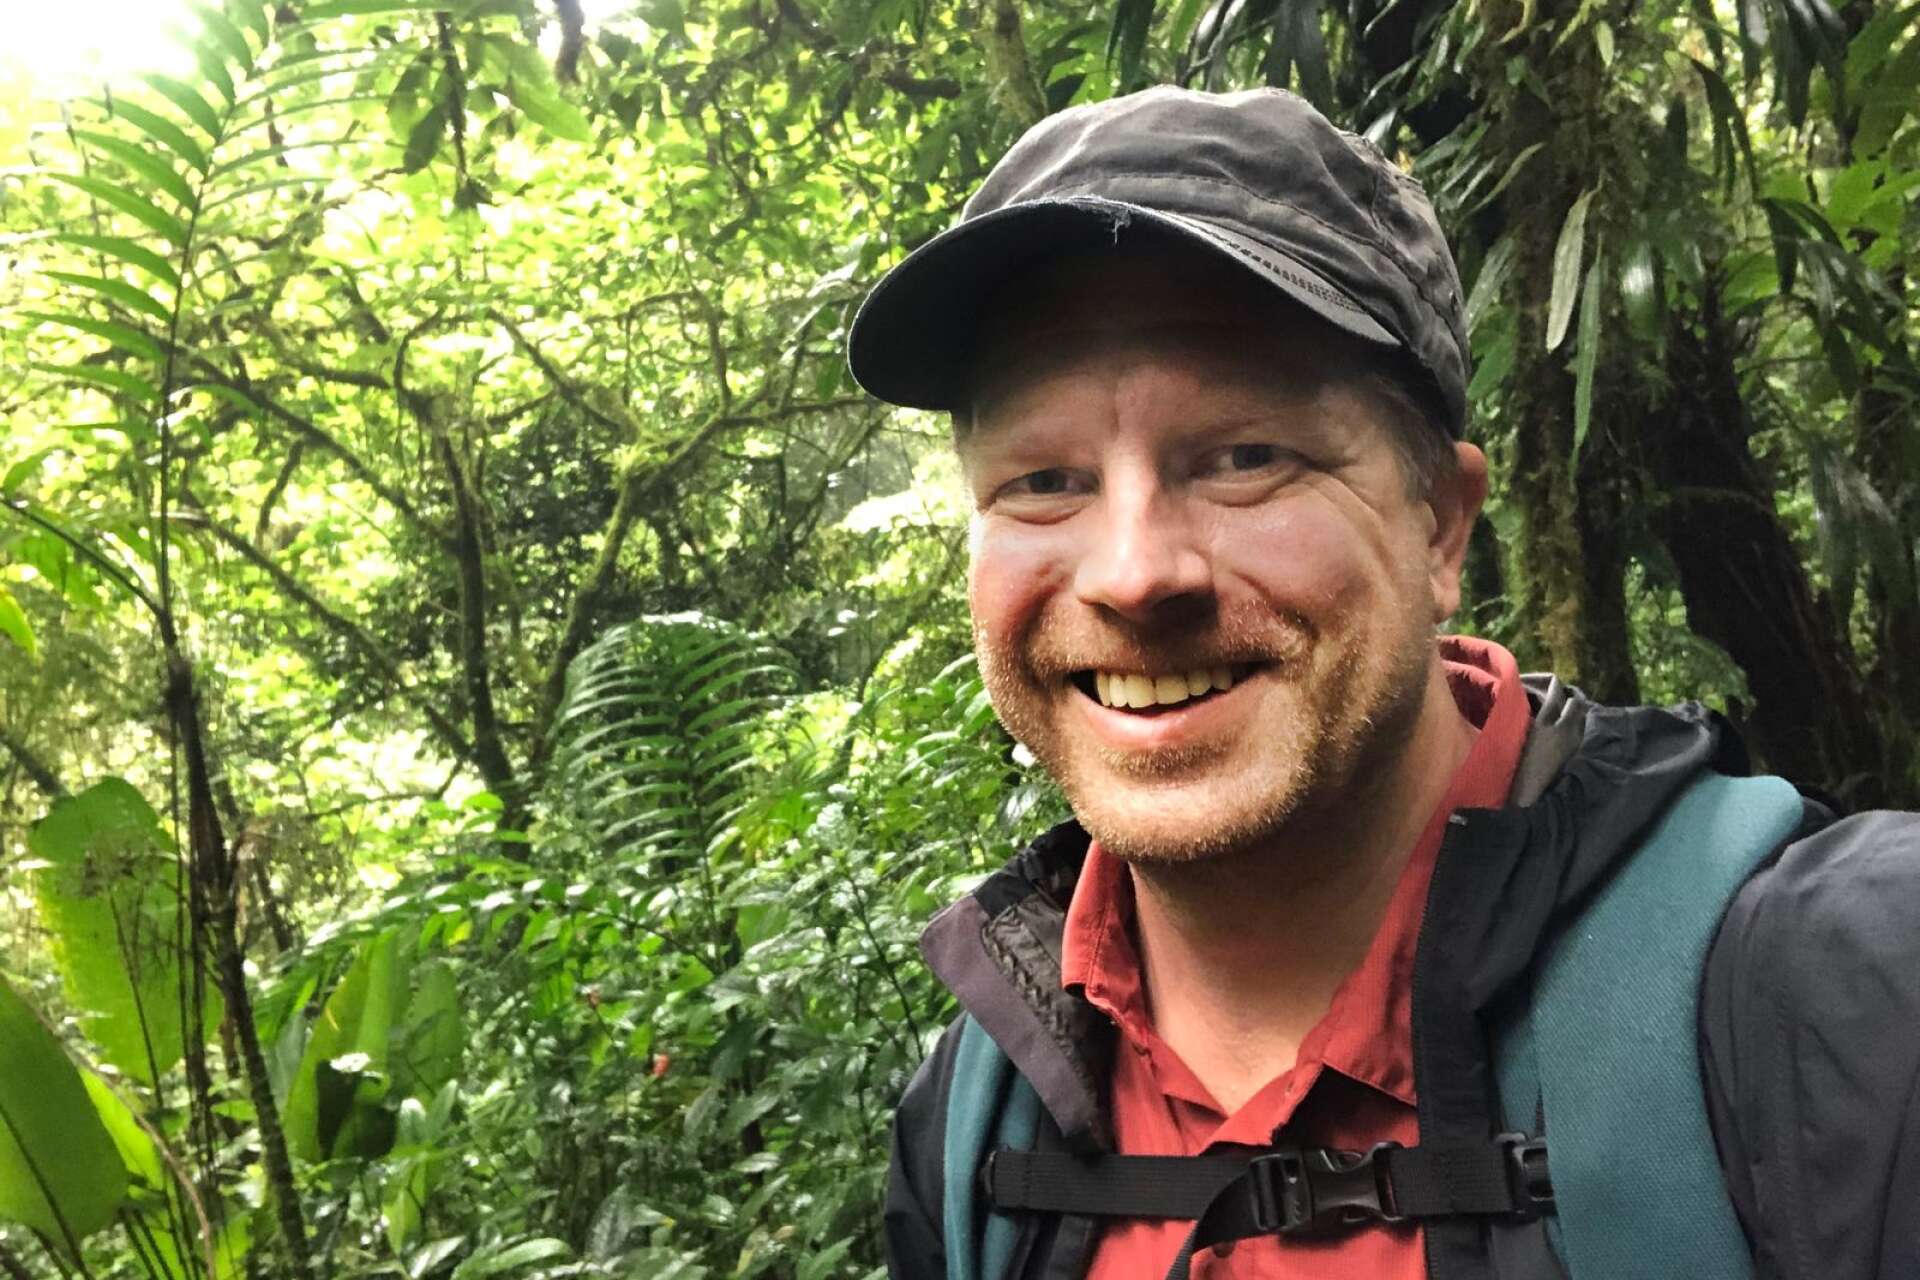 Marcus Haraldsson från Steneby är aktuell med boken ”Barnen som ville rädda regnskogen”.